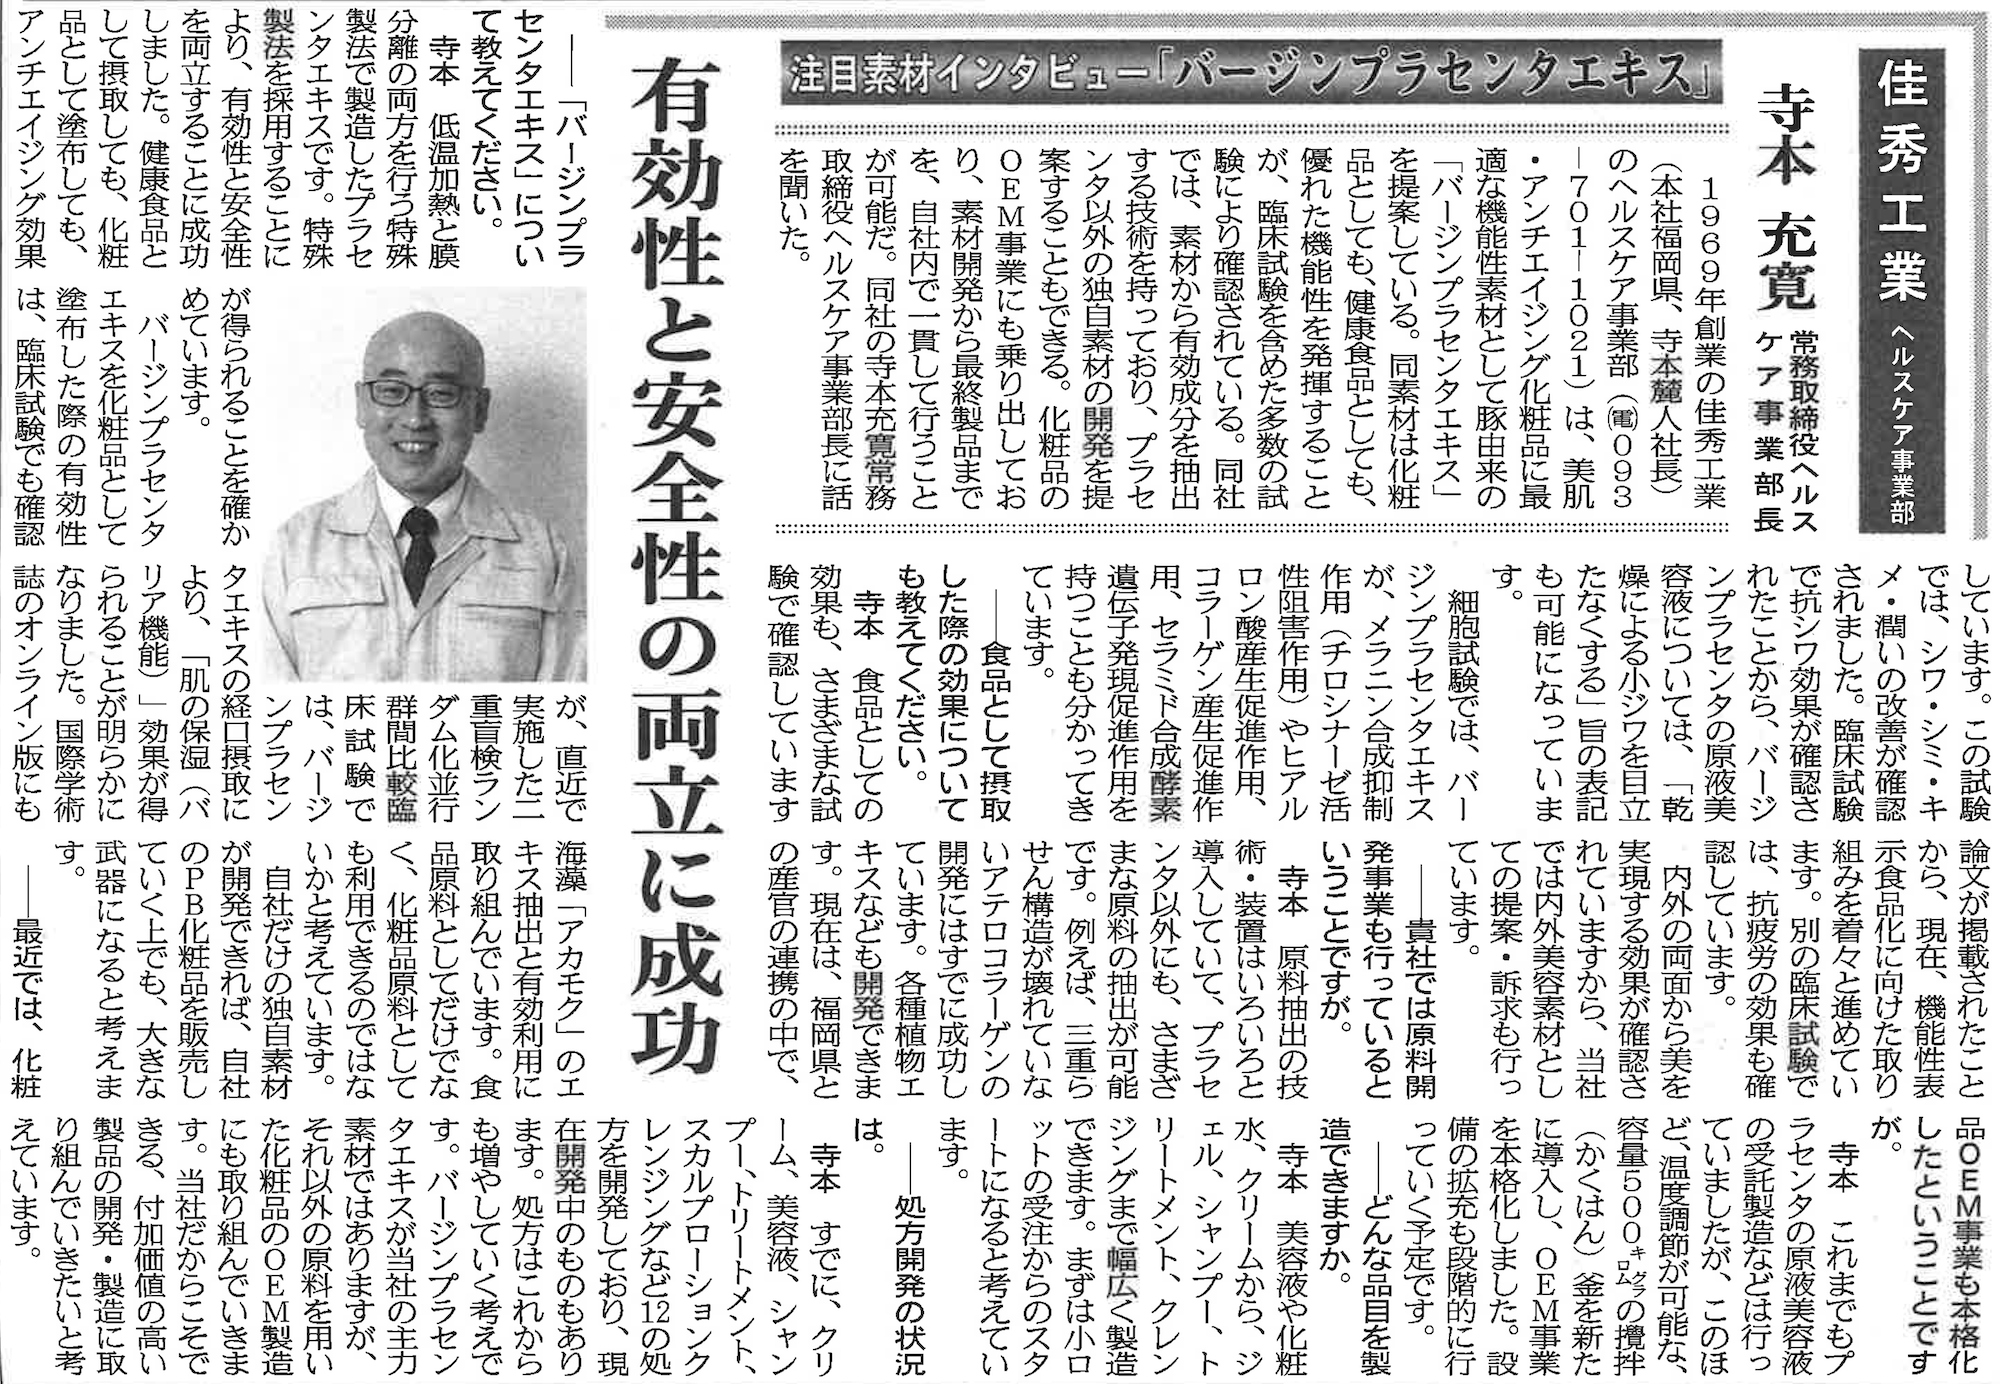 2020年11月12日本ネット経済新聞掲載記事